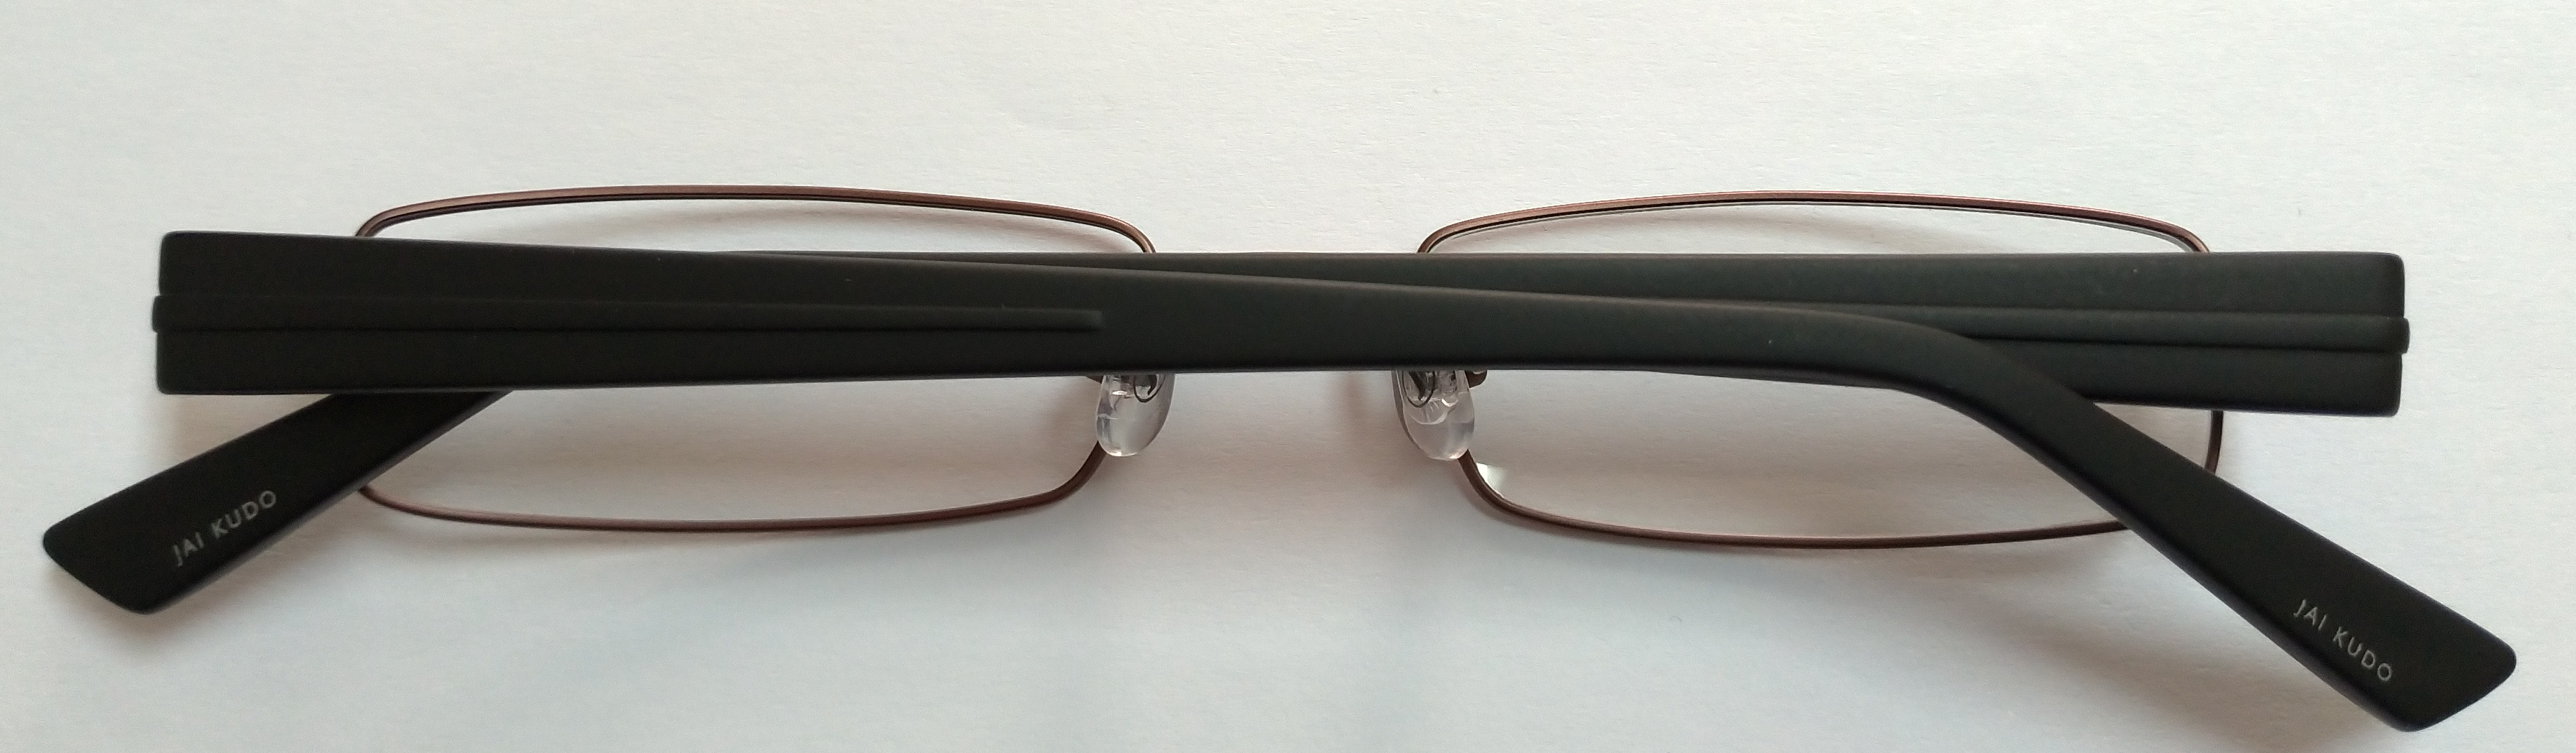 okuliarové rámčeky pánske JAI KUDO 536 M03 53-18-145 mm DMOC:2600 Kč AKCE - Lekáreň a zdravie